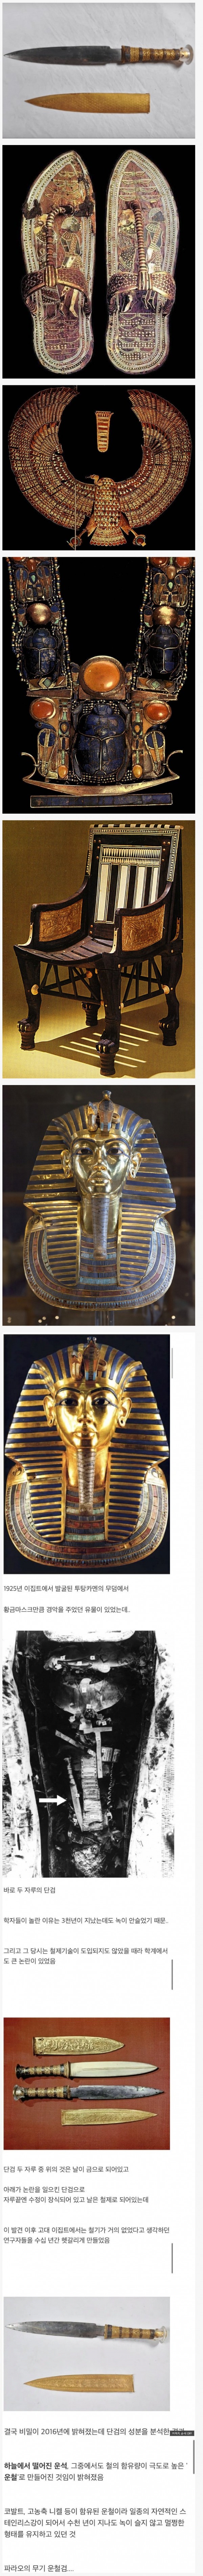 고대이집트 투탕카멘 무덤에서 발견된 것